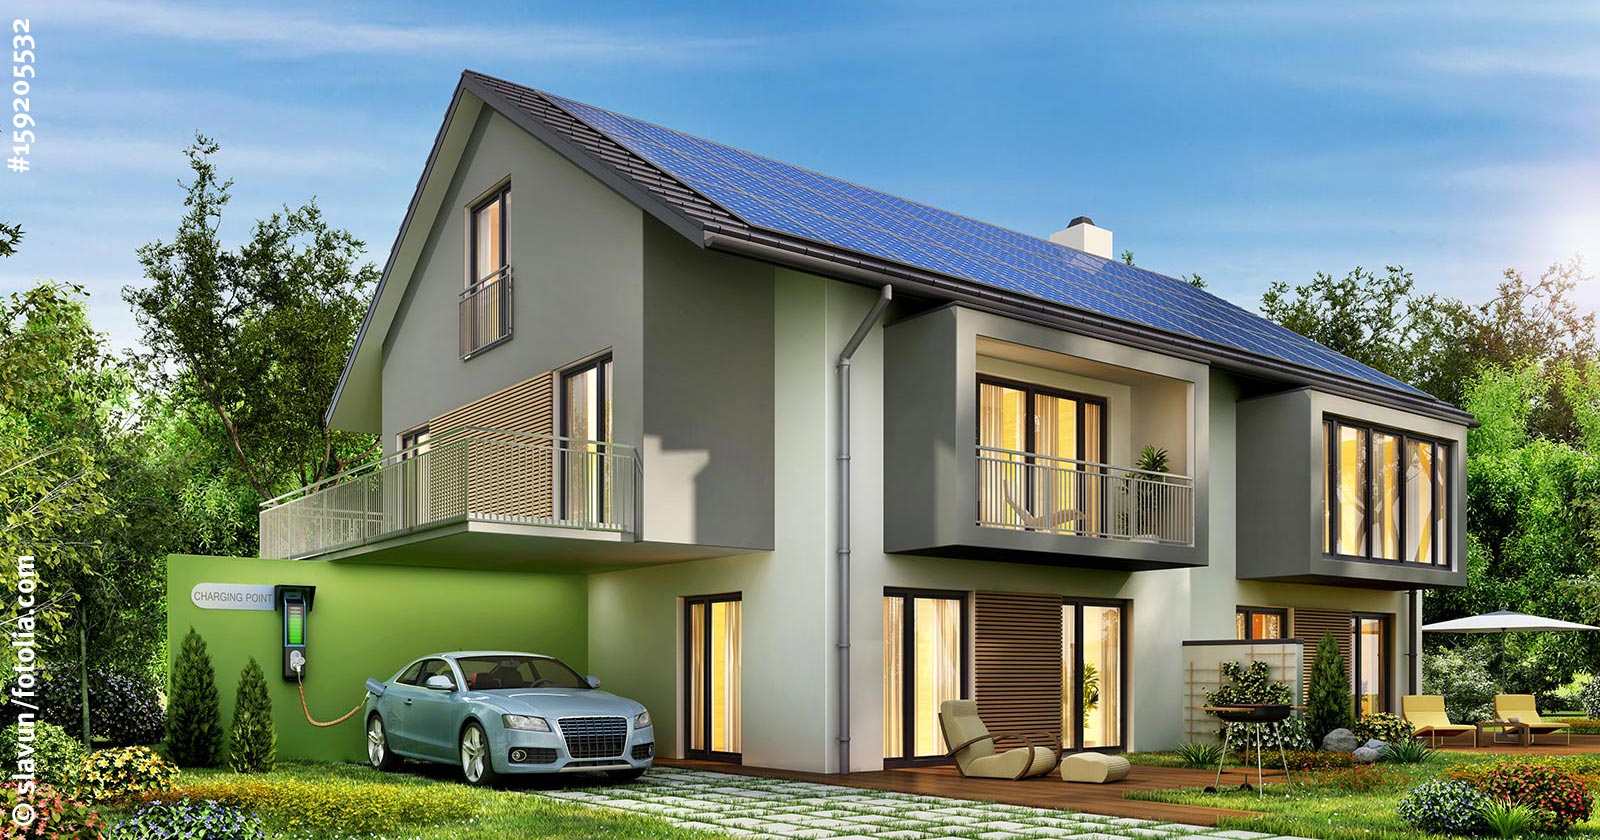 Haus mit Solarstromanlage und Elektroauto